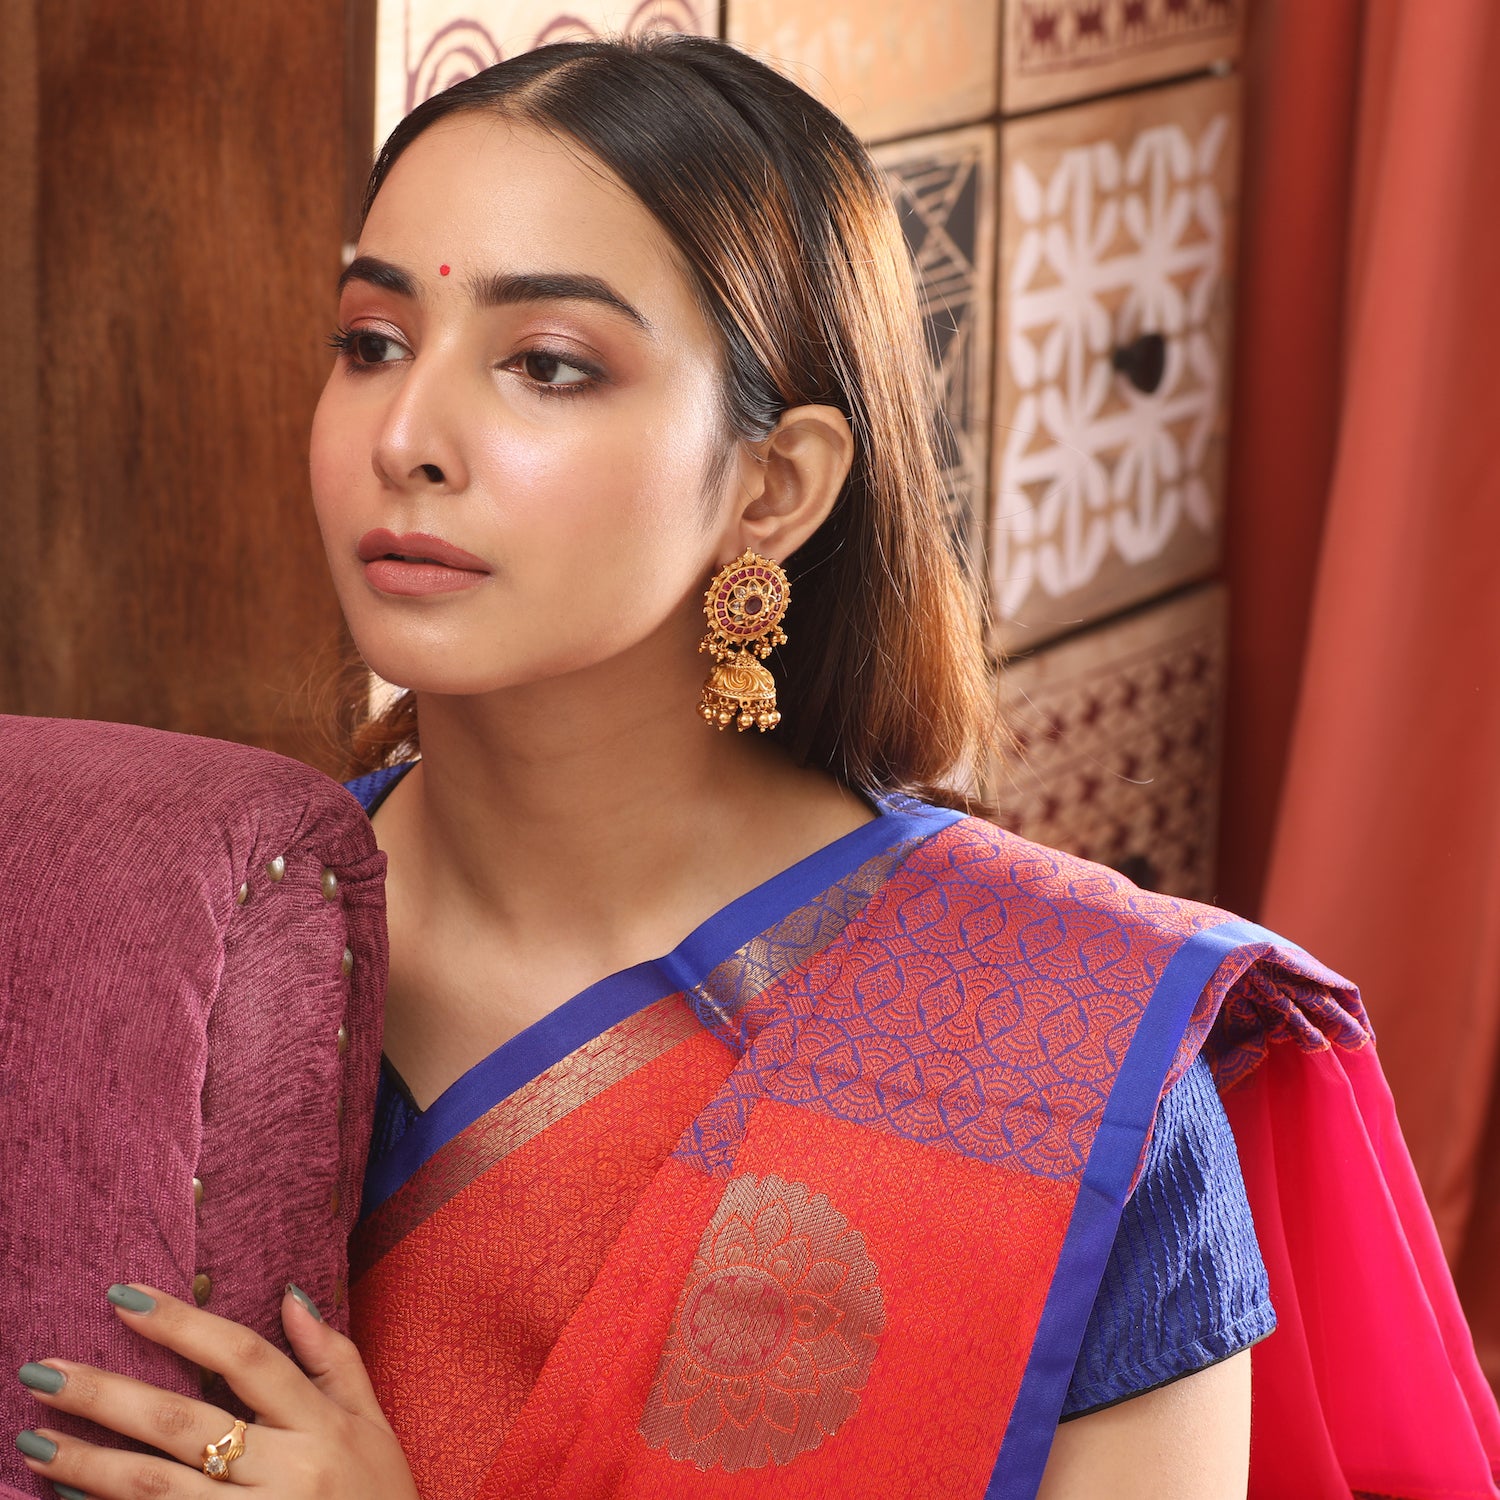 This saree is awesome! Black shirt - red traditional saree - earrings |  Saree models, Indian fashion saree, Indian sari dress